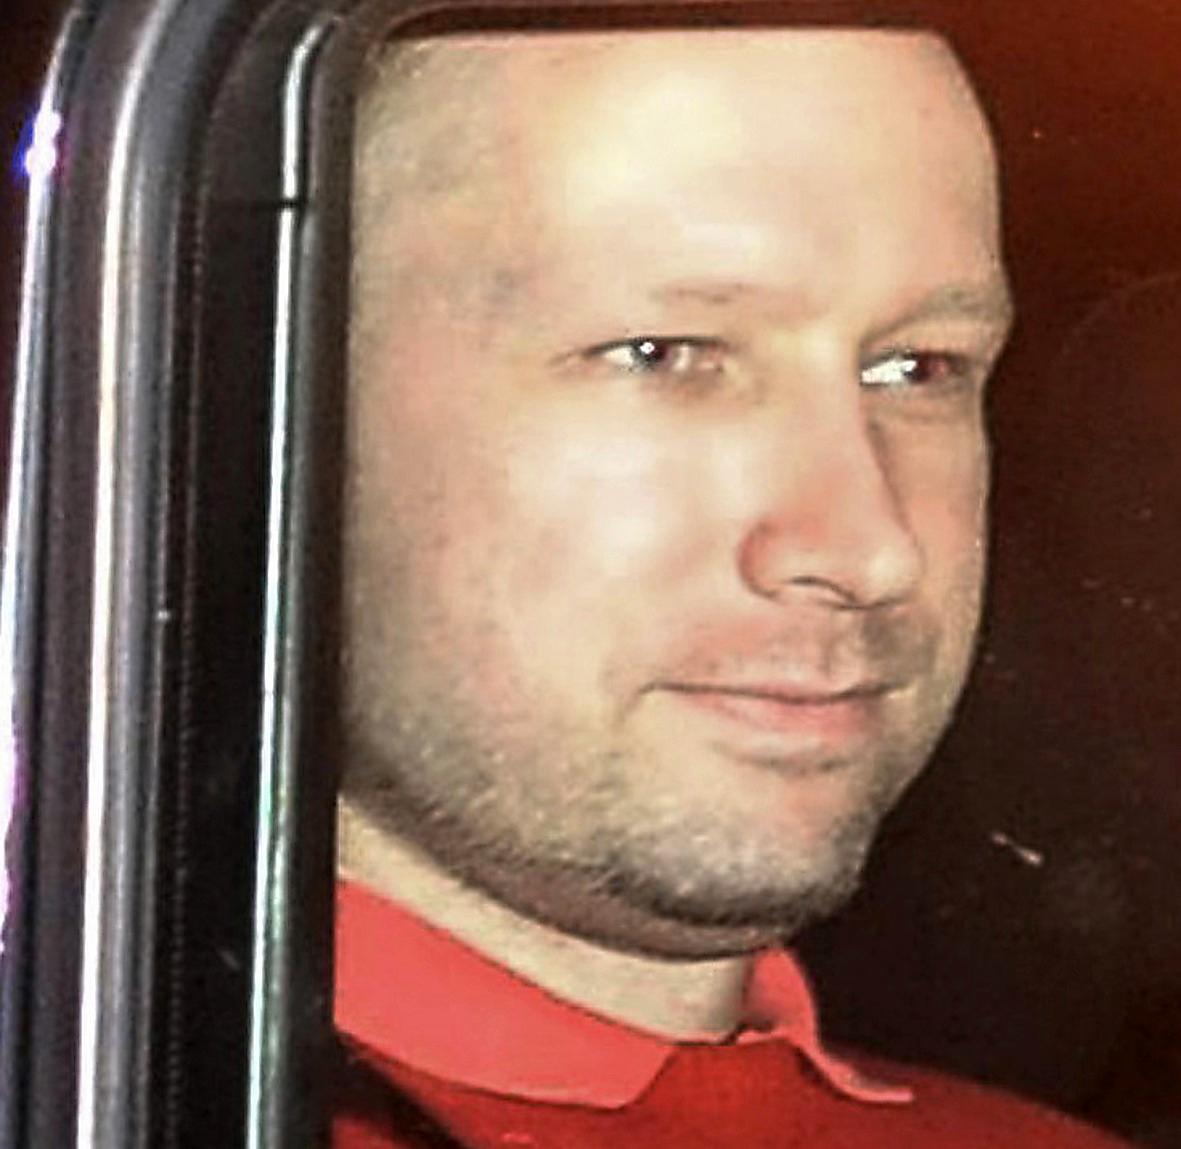 "HELT OBERÖRD"  I förhandlingen i går beslutades att Anders Behring Breivik ska sitta i häkte i åtta veckor. Han fördes till tingsrätten i Oslo en bepansrad jeep som åkte i konvoj.